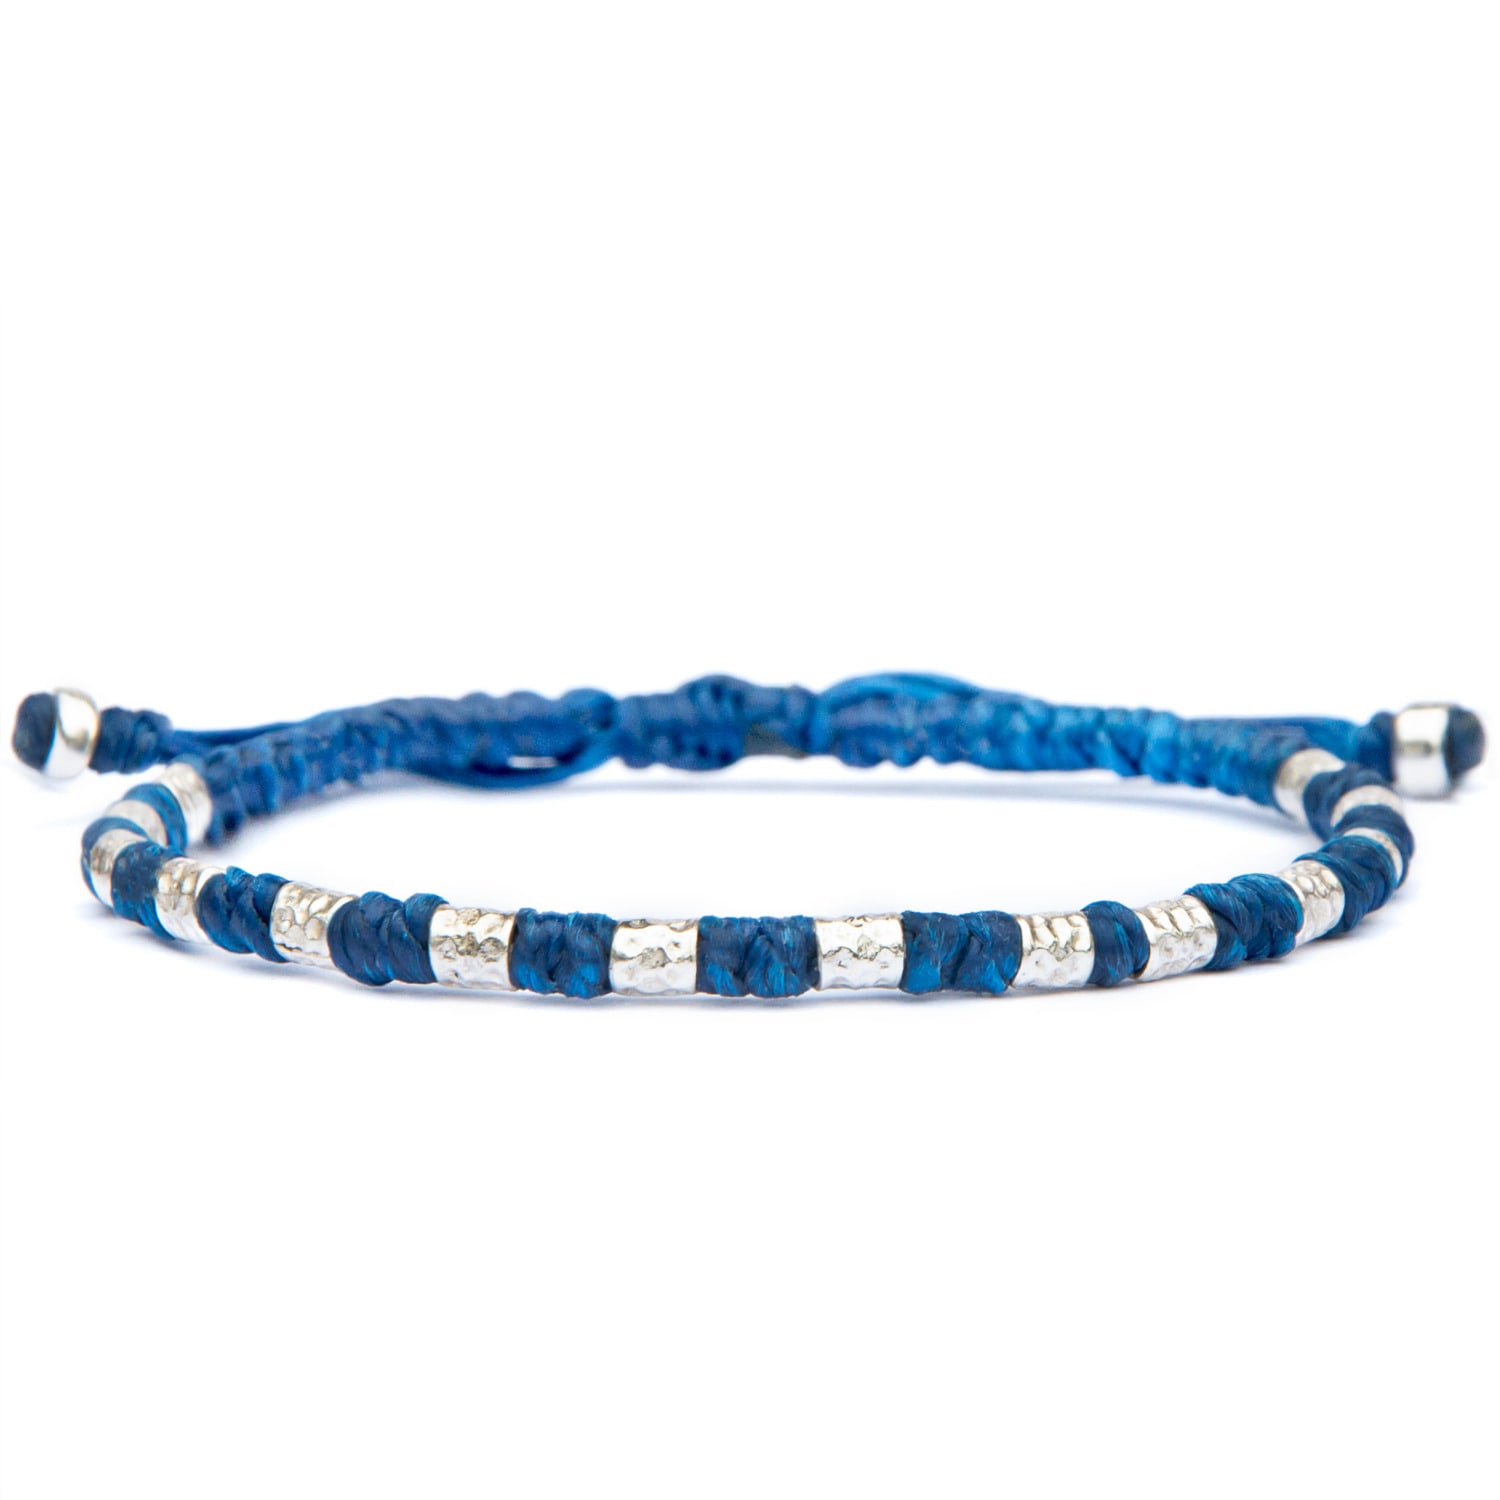 Viking Bracelet For Men - Handmade Of Vegan Rope And Silver - Blue Harbour UK Bracelets